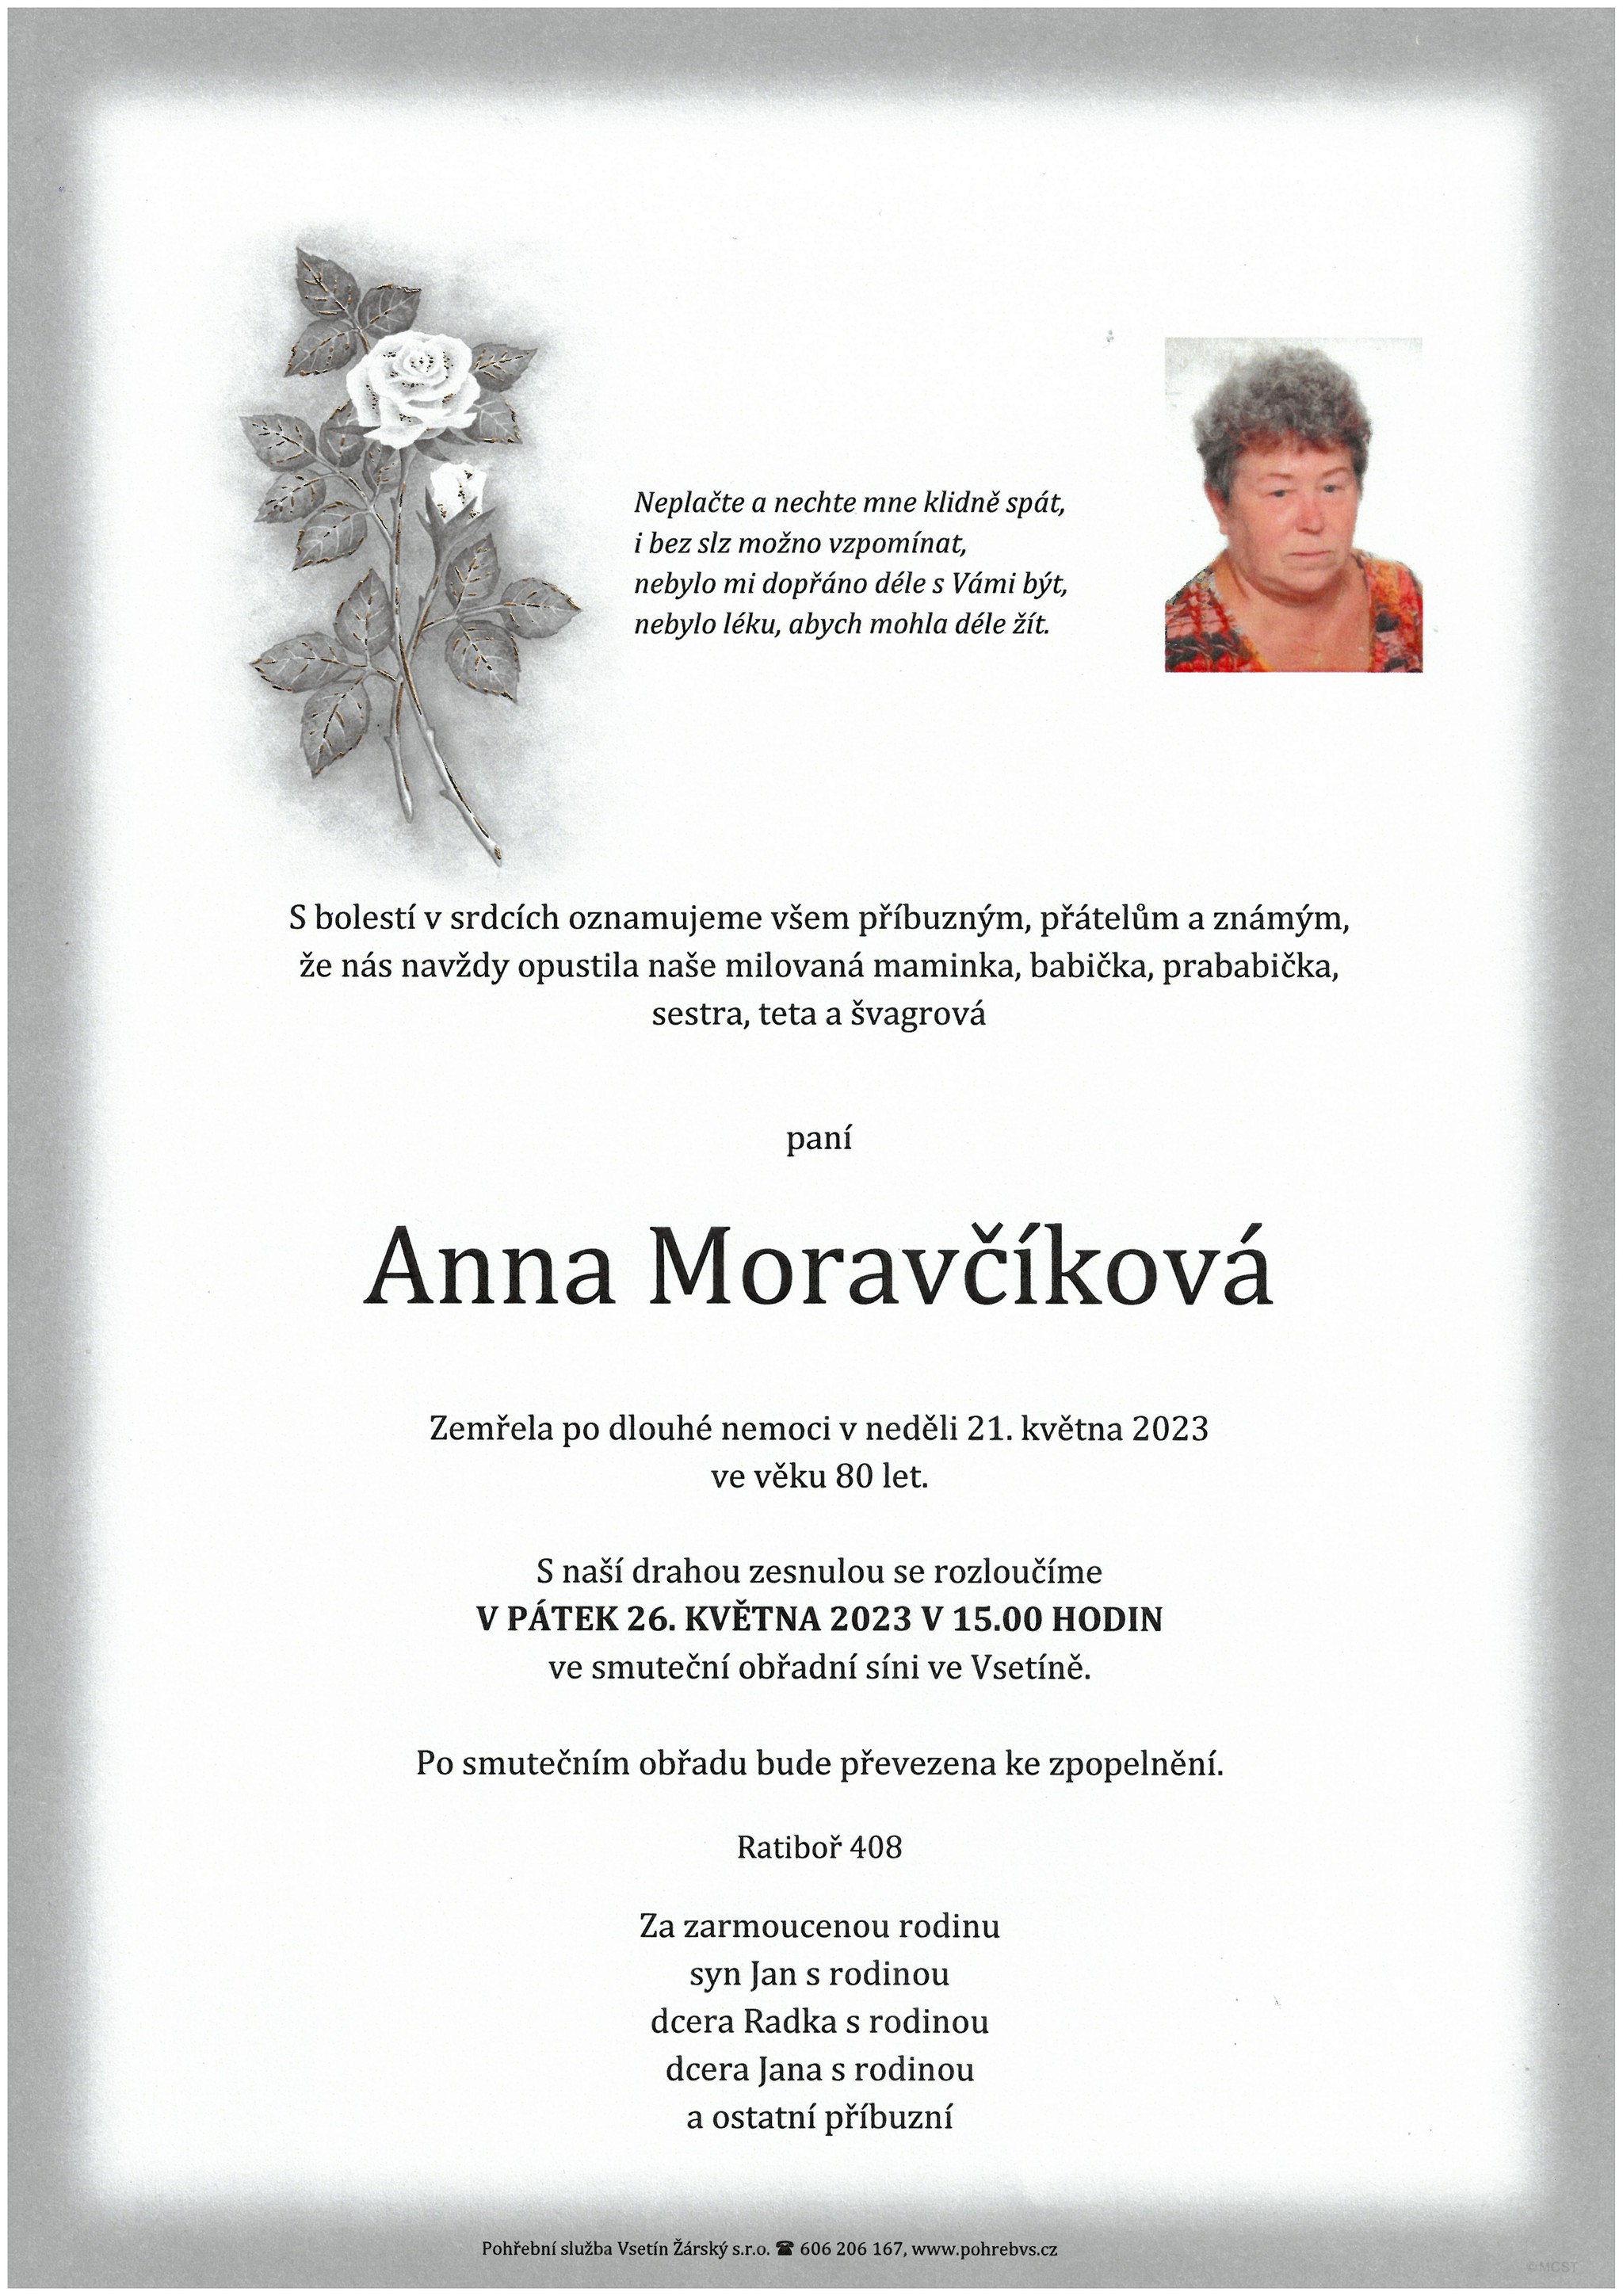 Anna Moravčíková